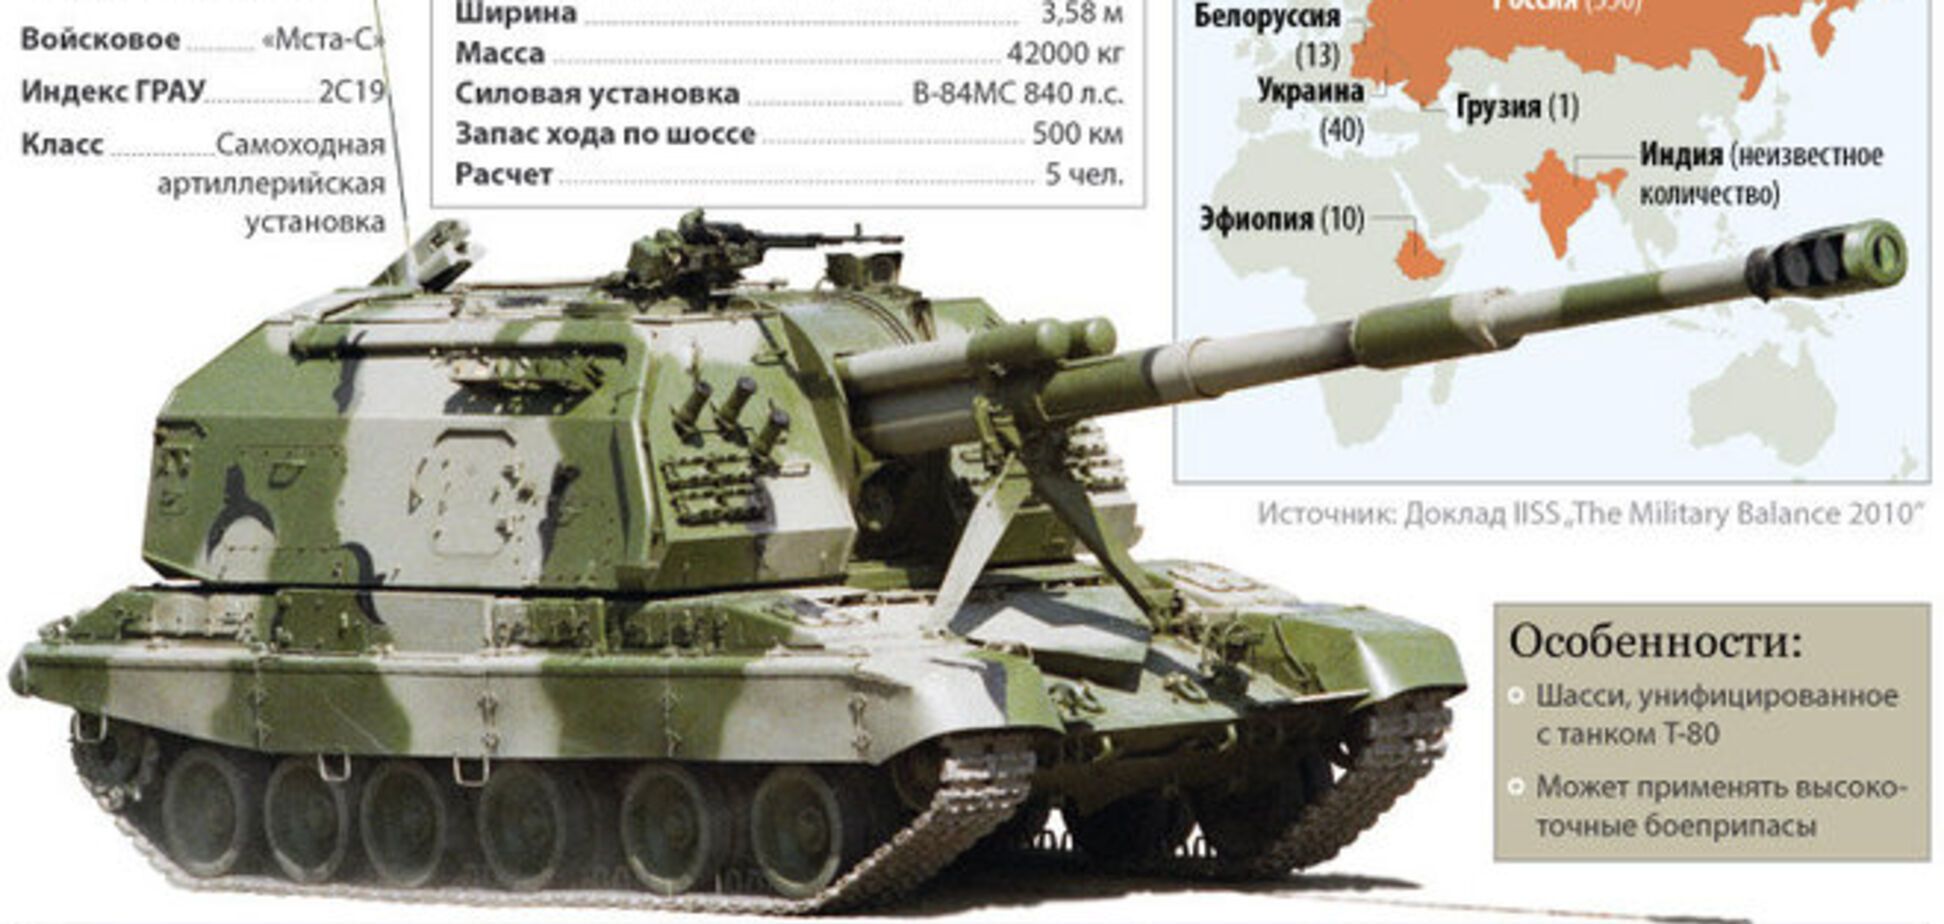 В Алчевську на відео записали колону російських самохідних гаубиць калібру 152 мм 'Мста-С'